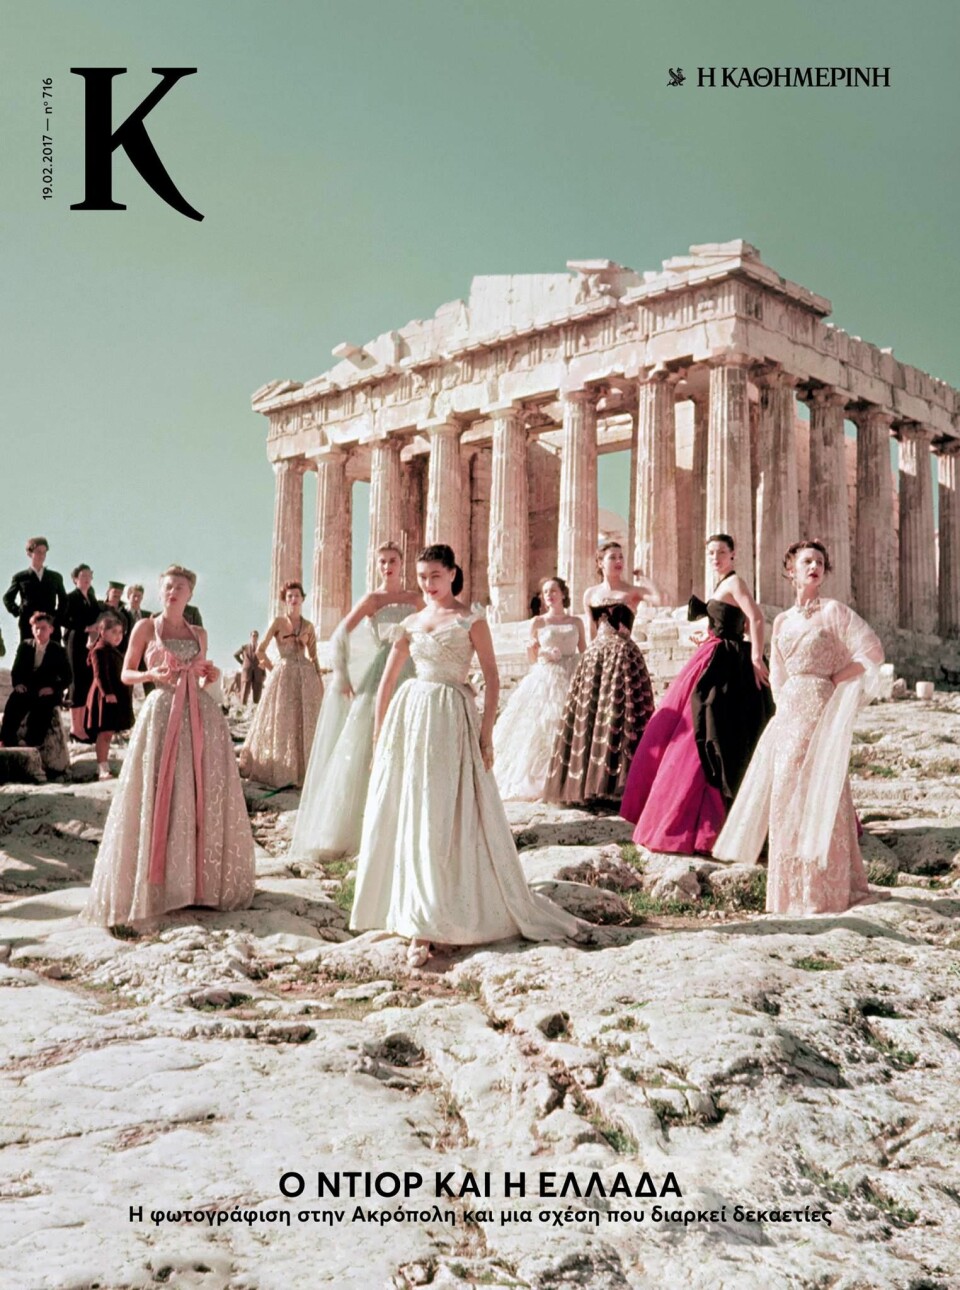 I 1951 fikk Christian Dior holde et moteshow på Akropolis. 66 år senere blir Gucci nektet å gjøre det samme. (Foto: (Faksimile: Kathimerini))